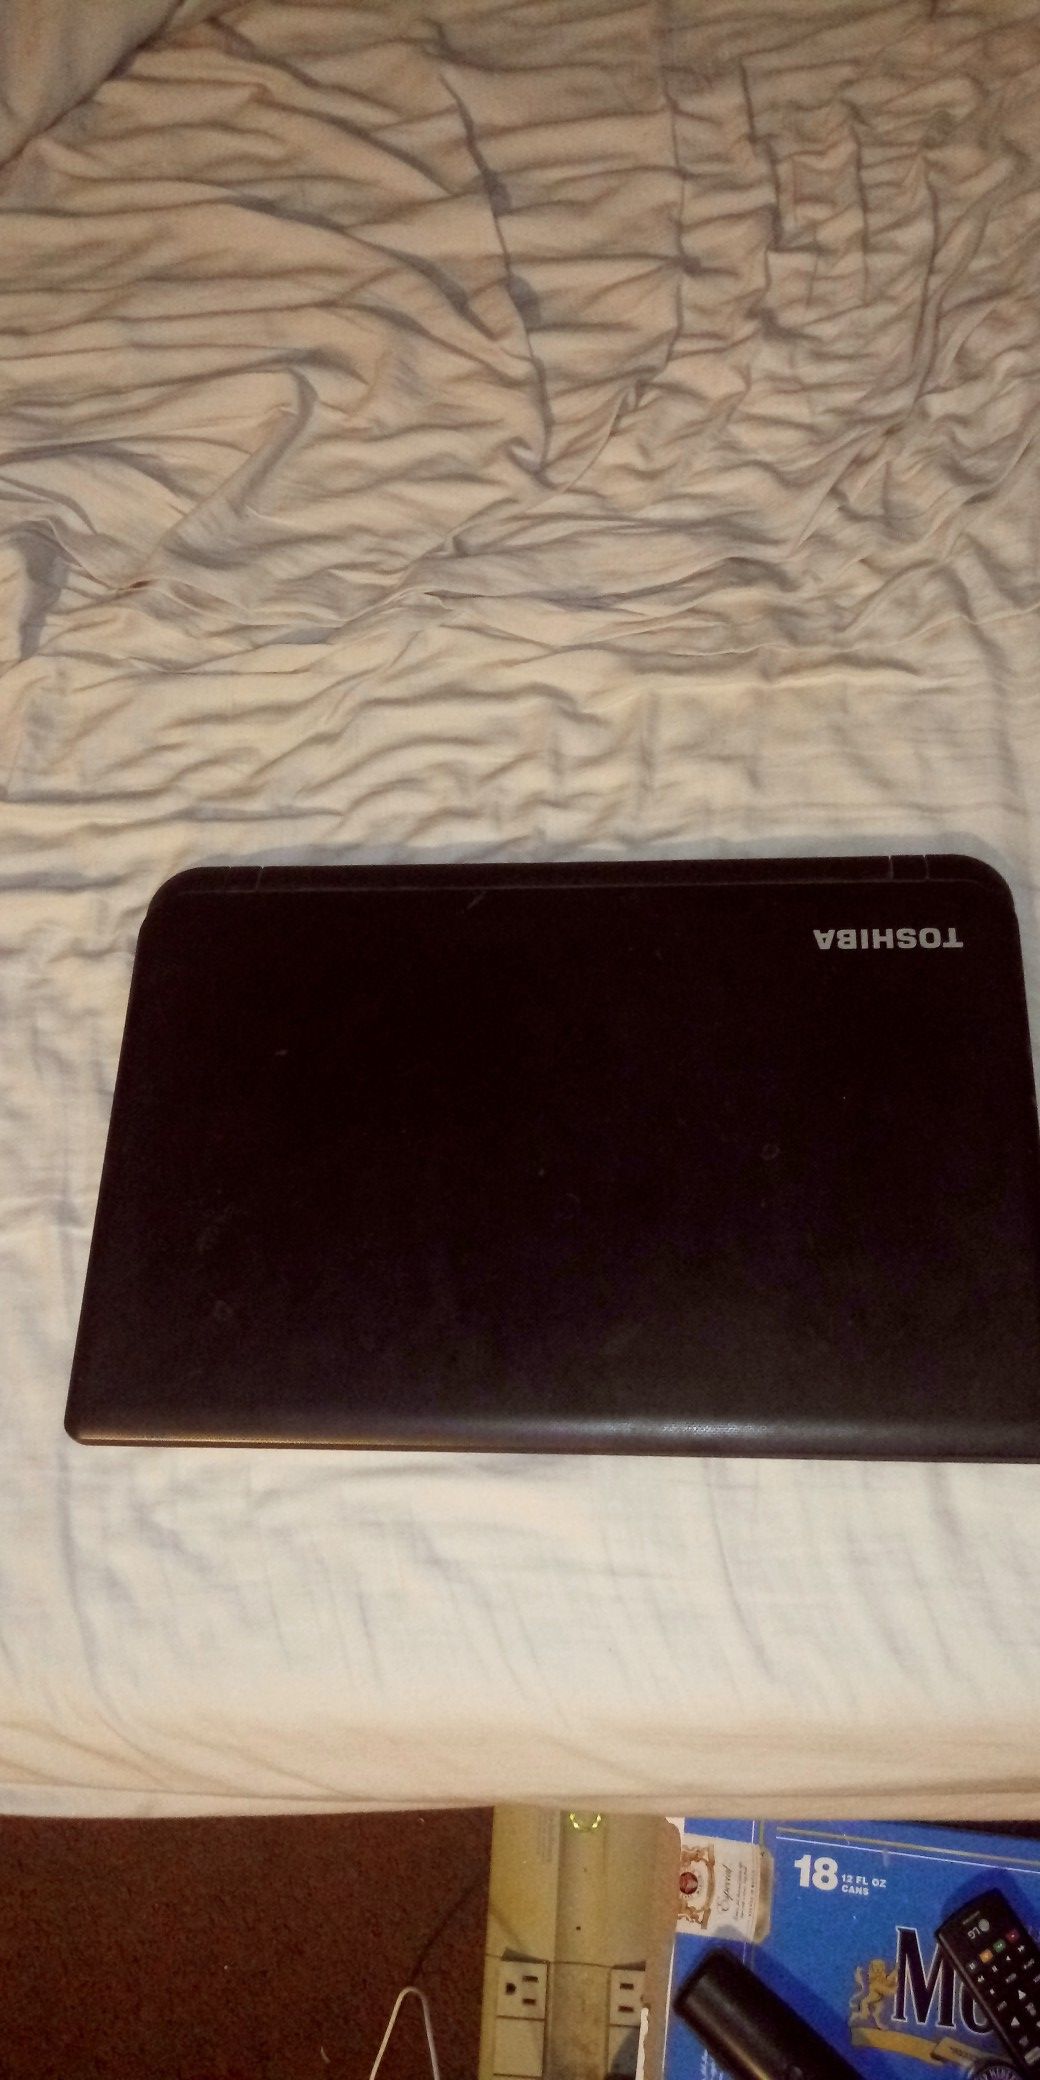 Toshiba satellite laptop